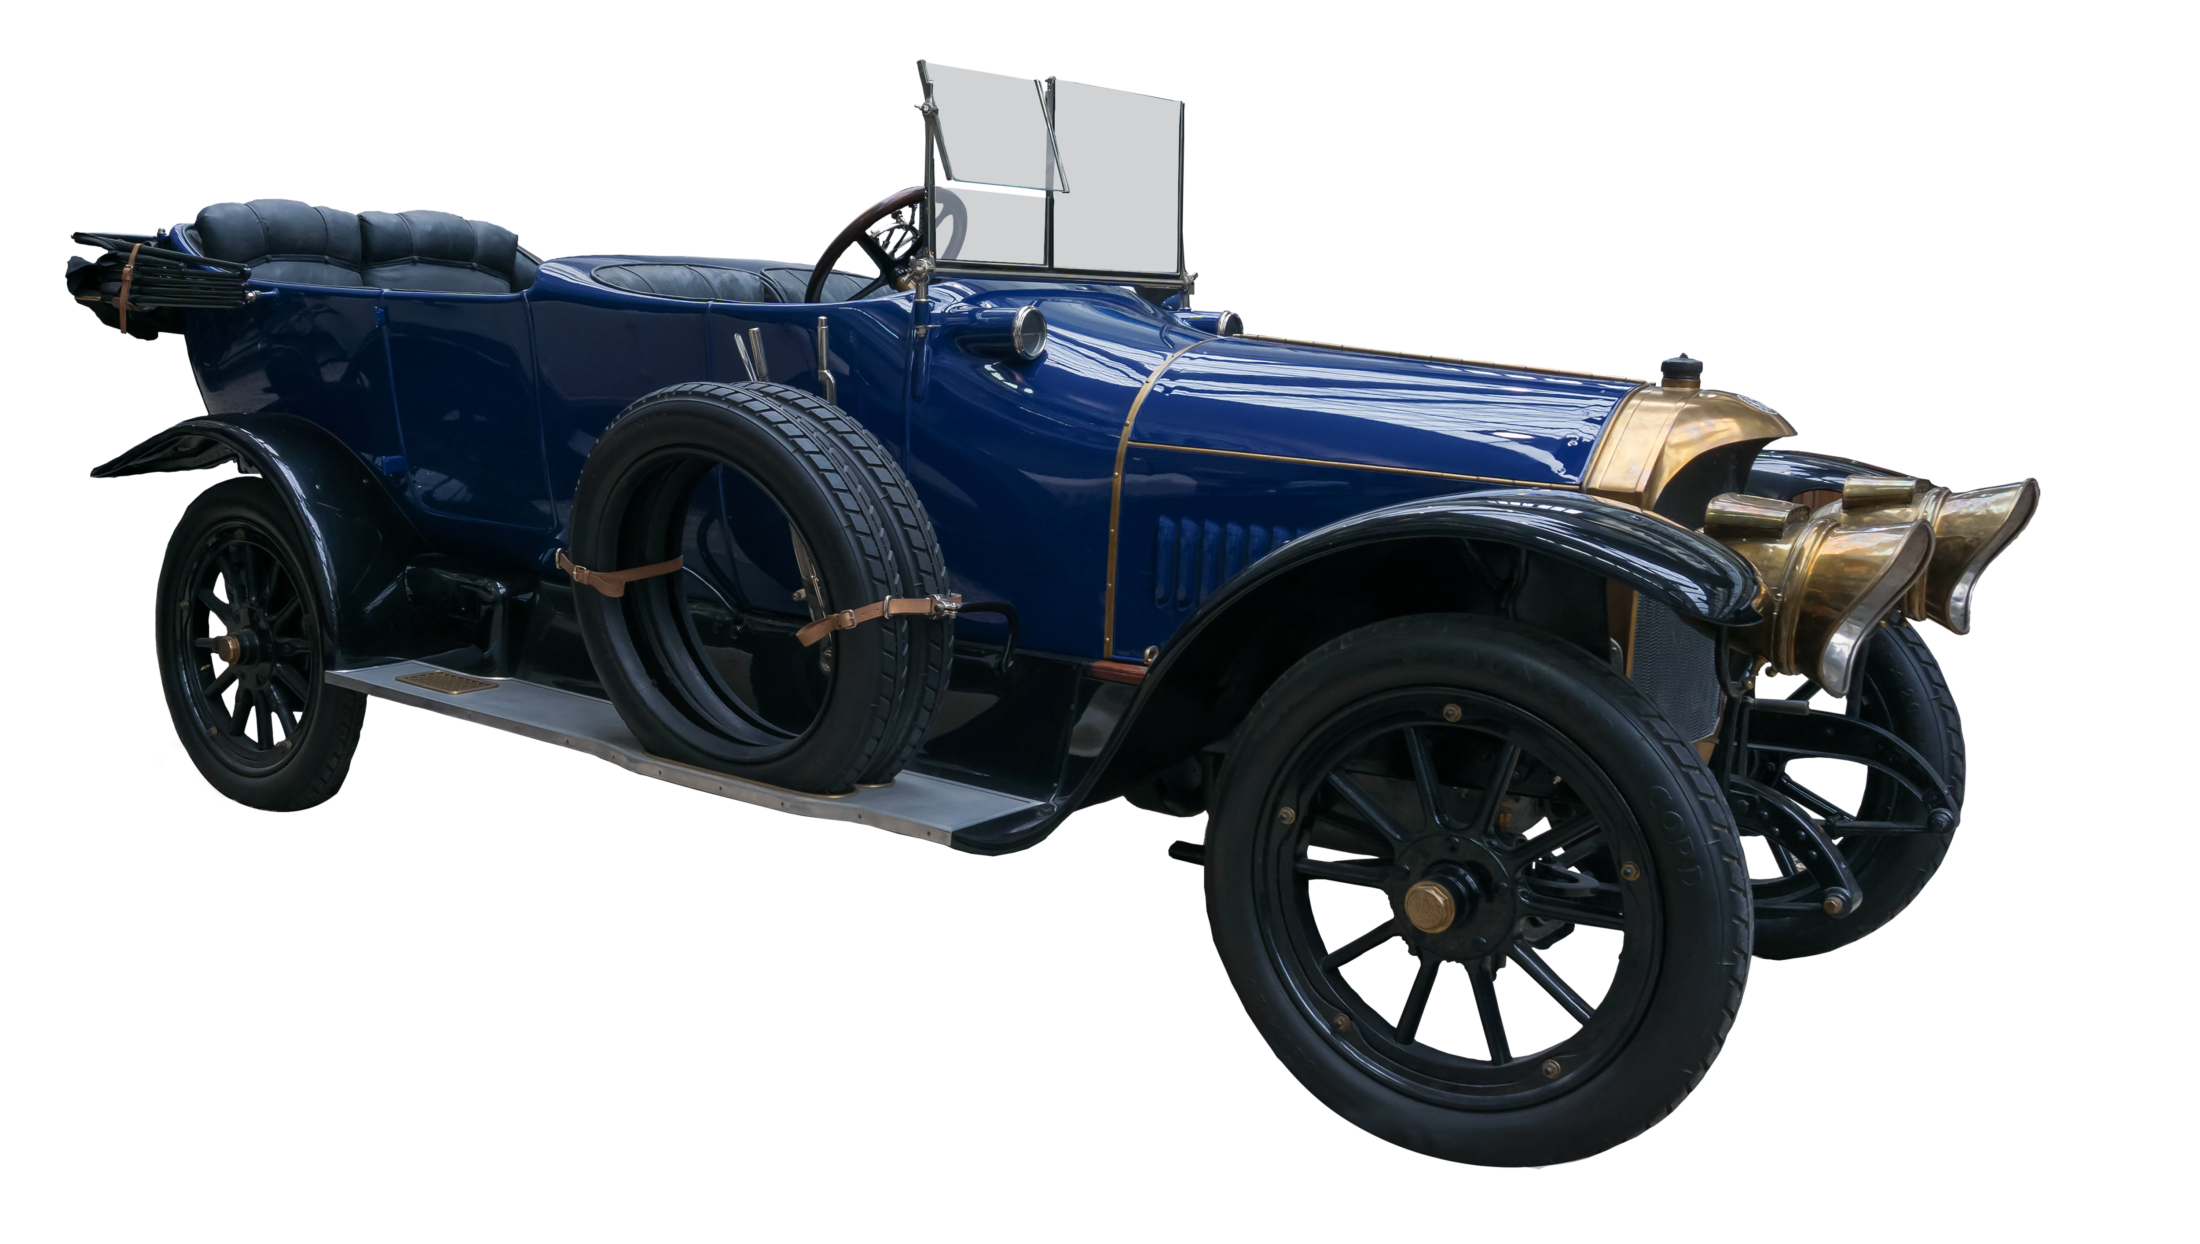 Benz 16 40 Bj 1914